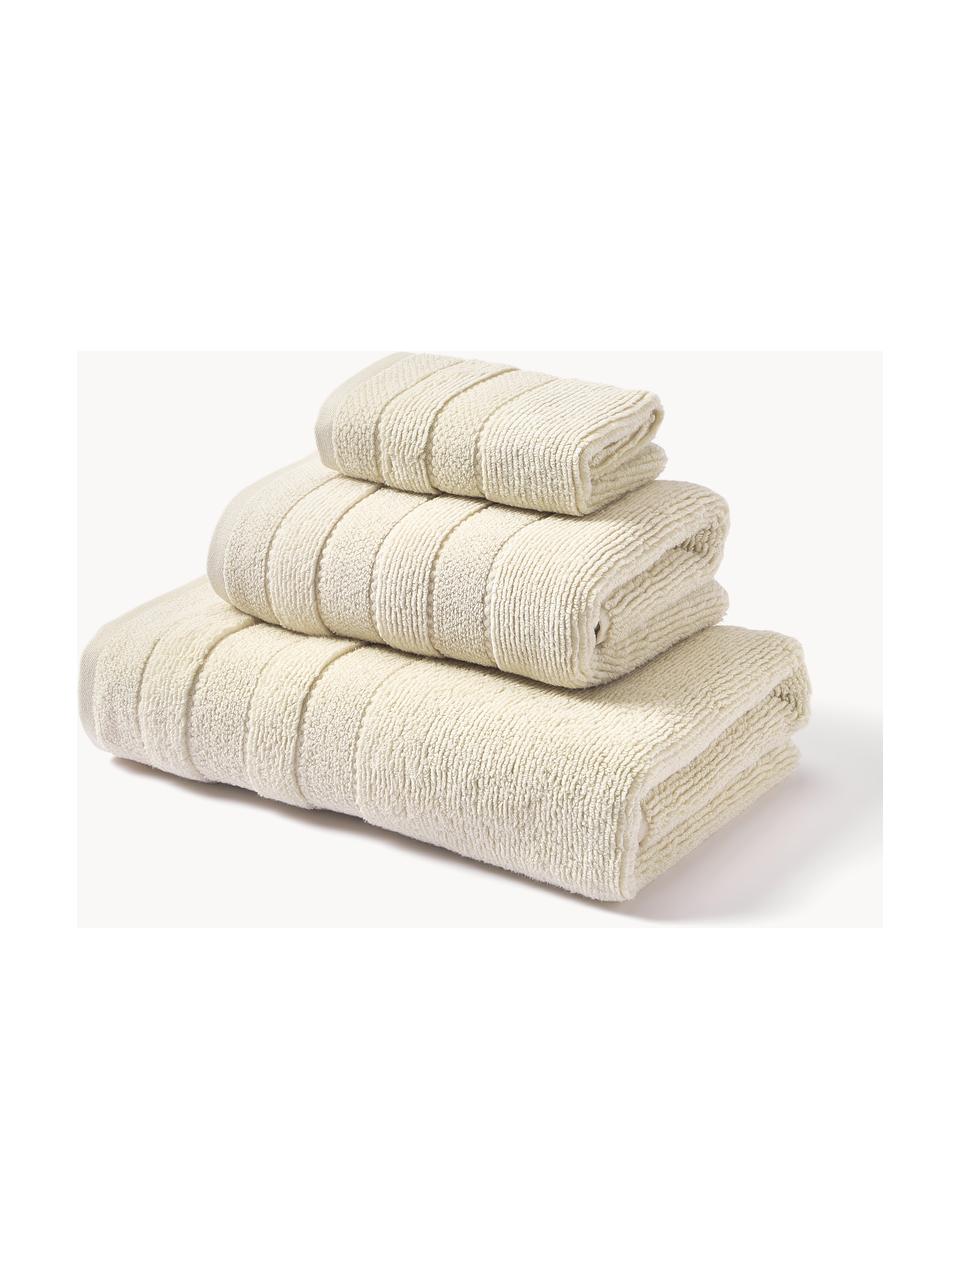 Lot de serviettes de bain avec bordure décorative Luxe, 3 élém., Blanc cassé, 3 éléments (1 serviette invité, 1 serviette de toilette et 1 drap de bain)